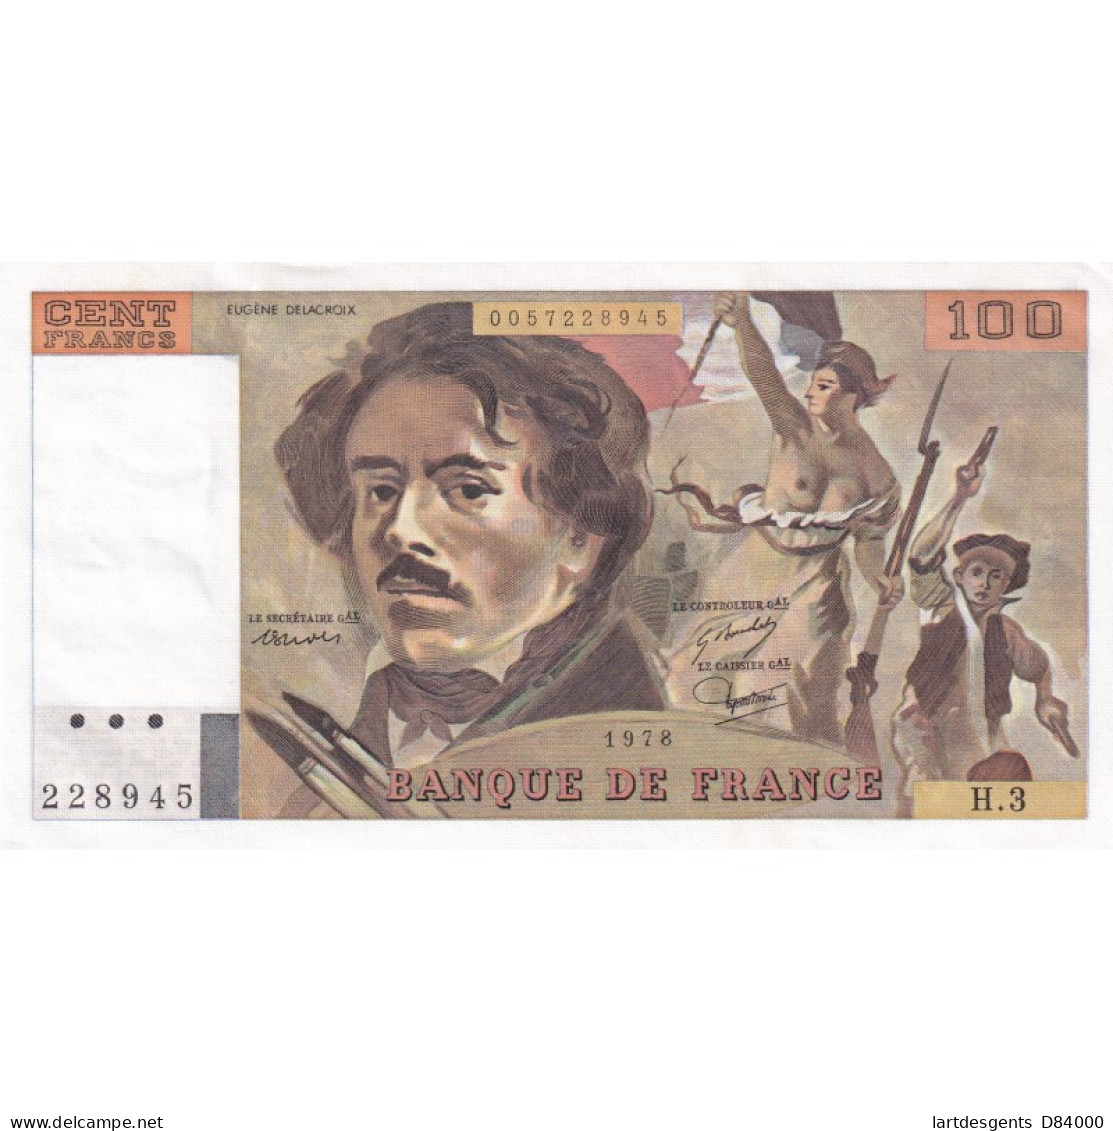 Billet France 100 Francs Delacroix 1978, H.3 228945 UNC, Cote 140 Euros,  Lartdesgents - 100 F 1978-1995 ''Delacroix''